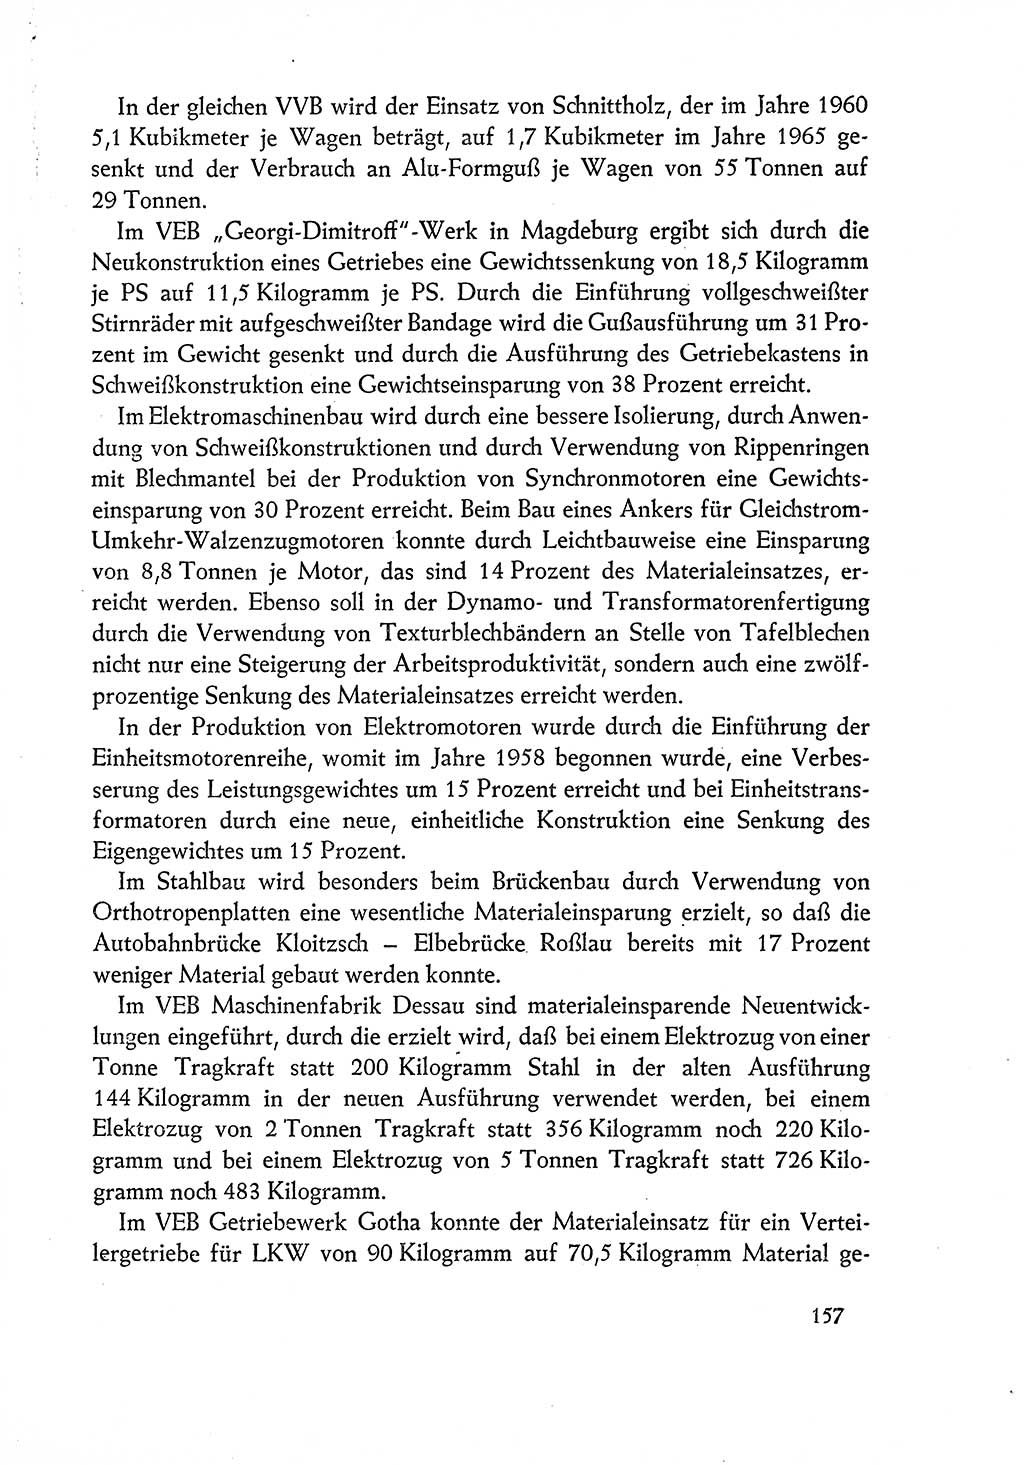 Dokumente der Sozialistischen Einheitspartei Deutschlands (SED) [Deutsche Demokratische Republik (DDR)] 1960-1961, Seite 157 (Dok. SED DDR 1960-1961, S. 157)